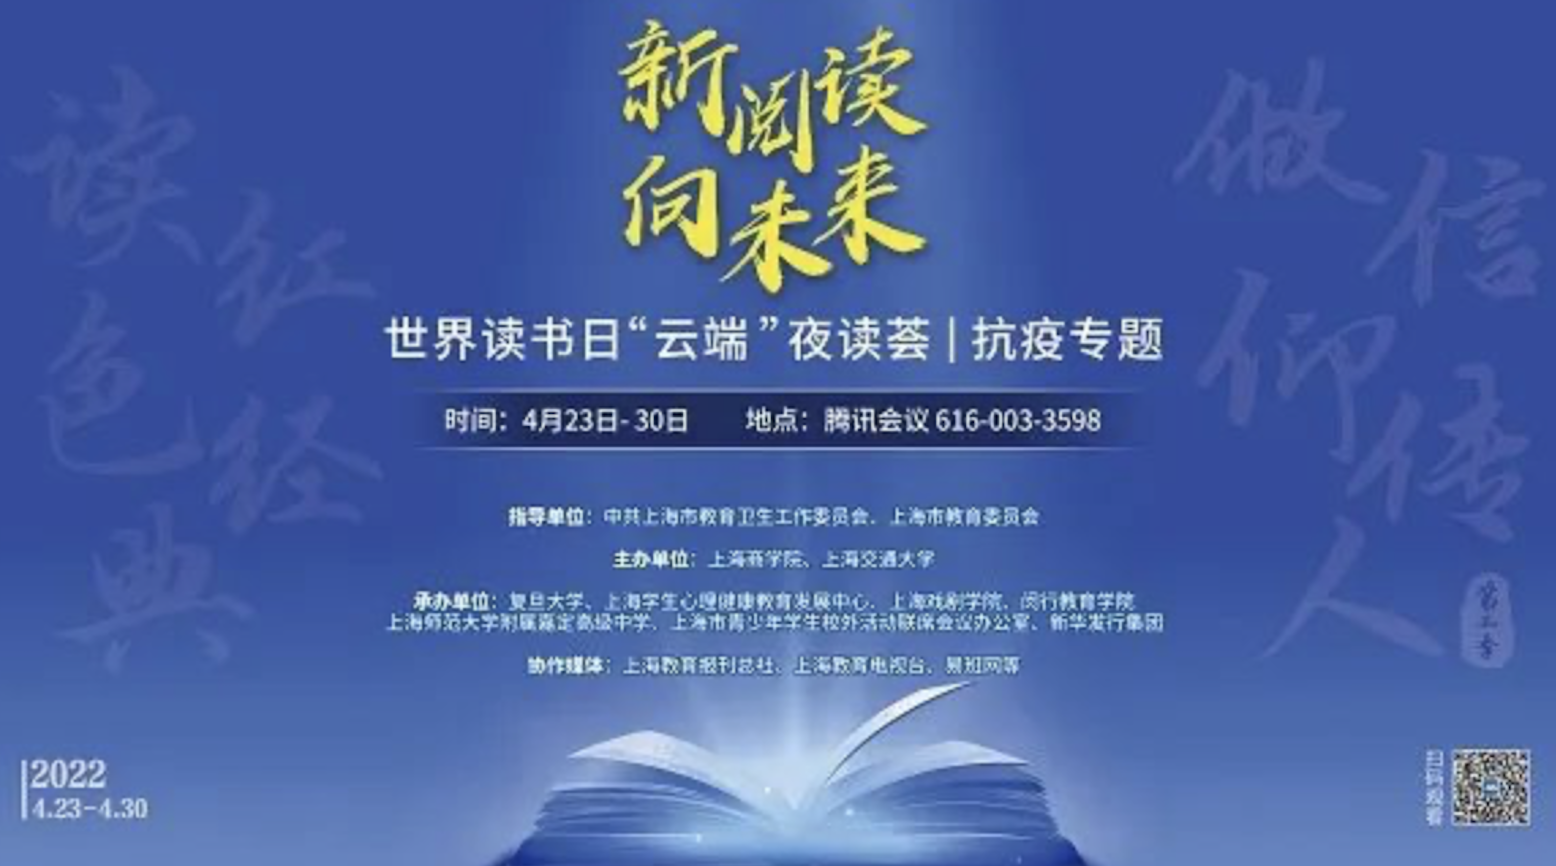 上海商学院联合主办的市级读书活动——“新阅读，向未来”云端夜读荟（抗疫专题）